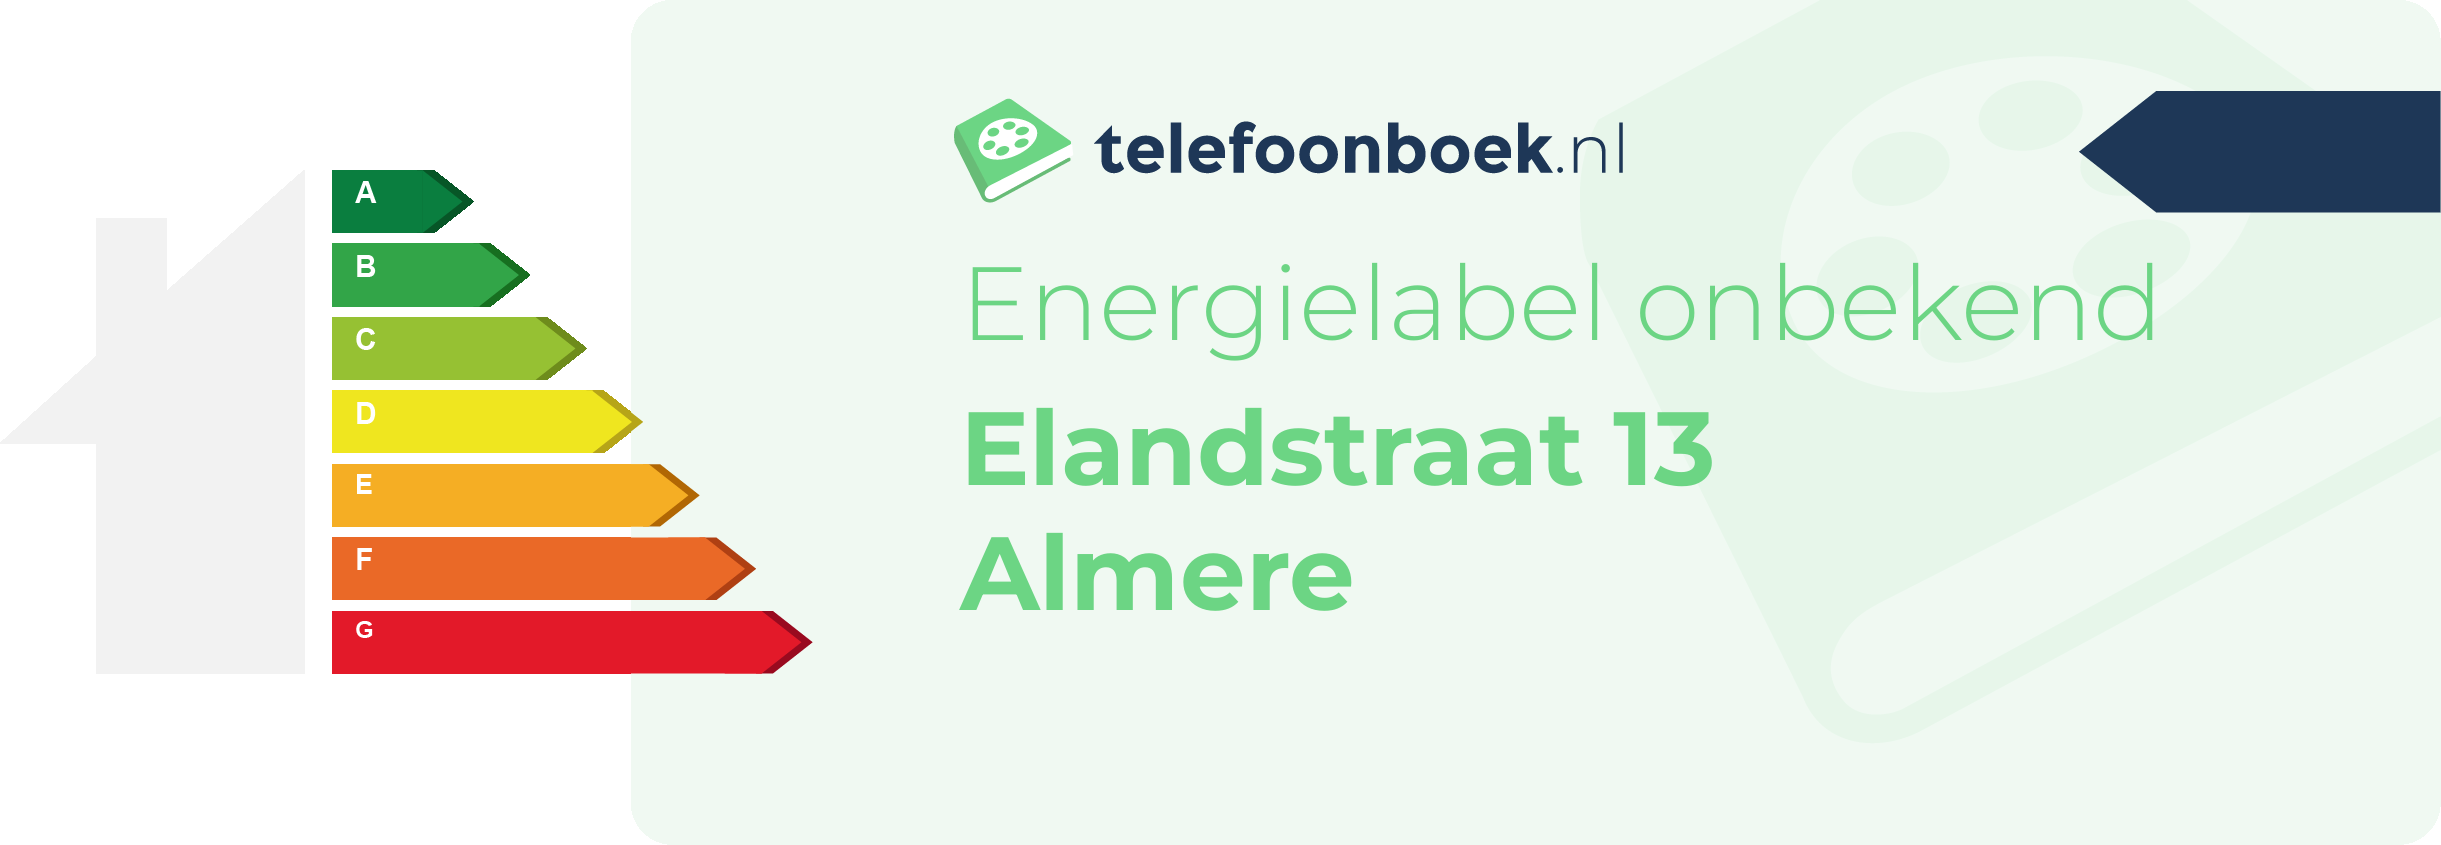 Energielabel Elandstraat 13 Almere